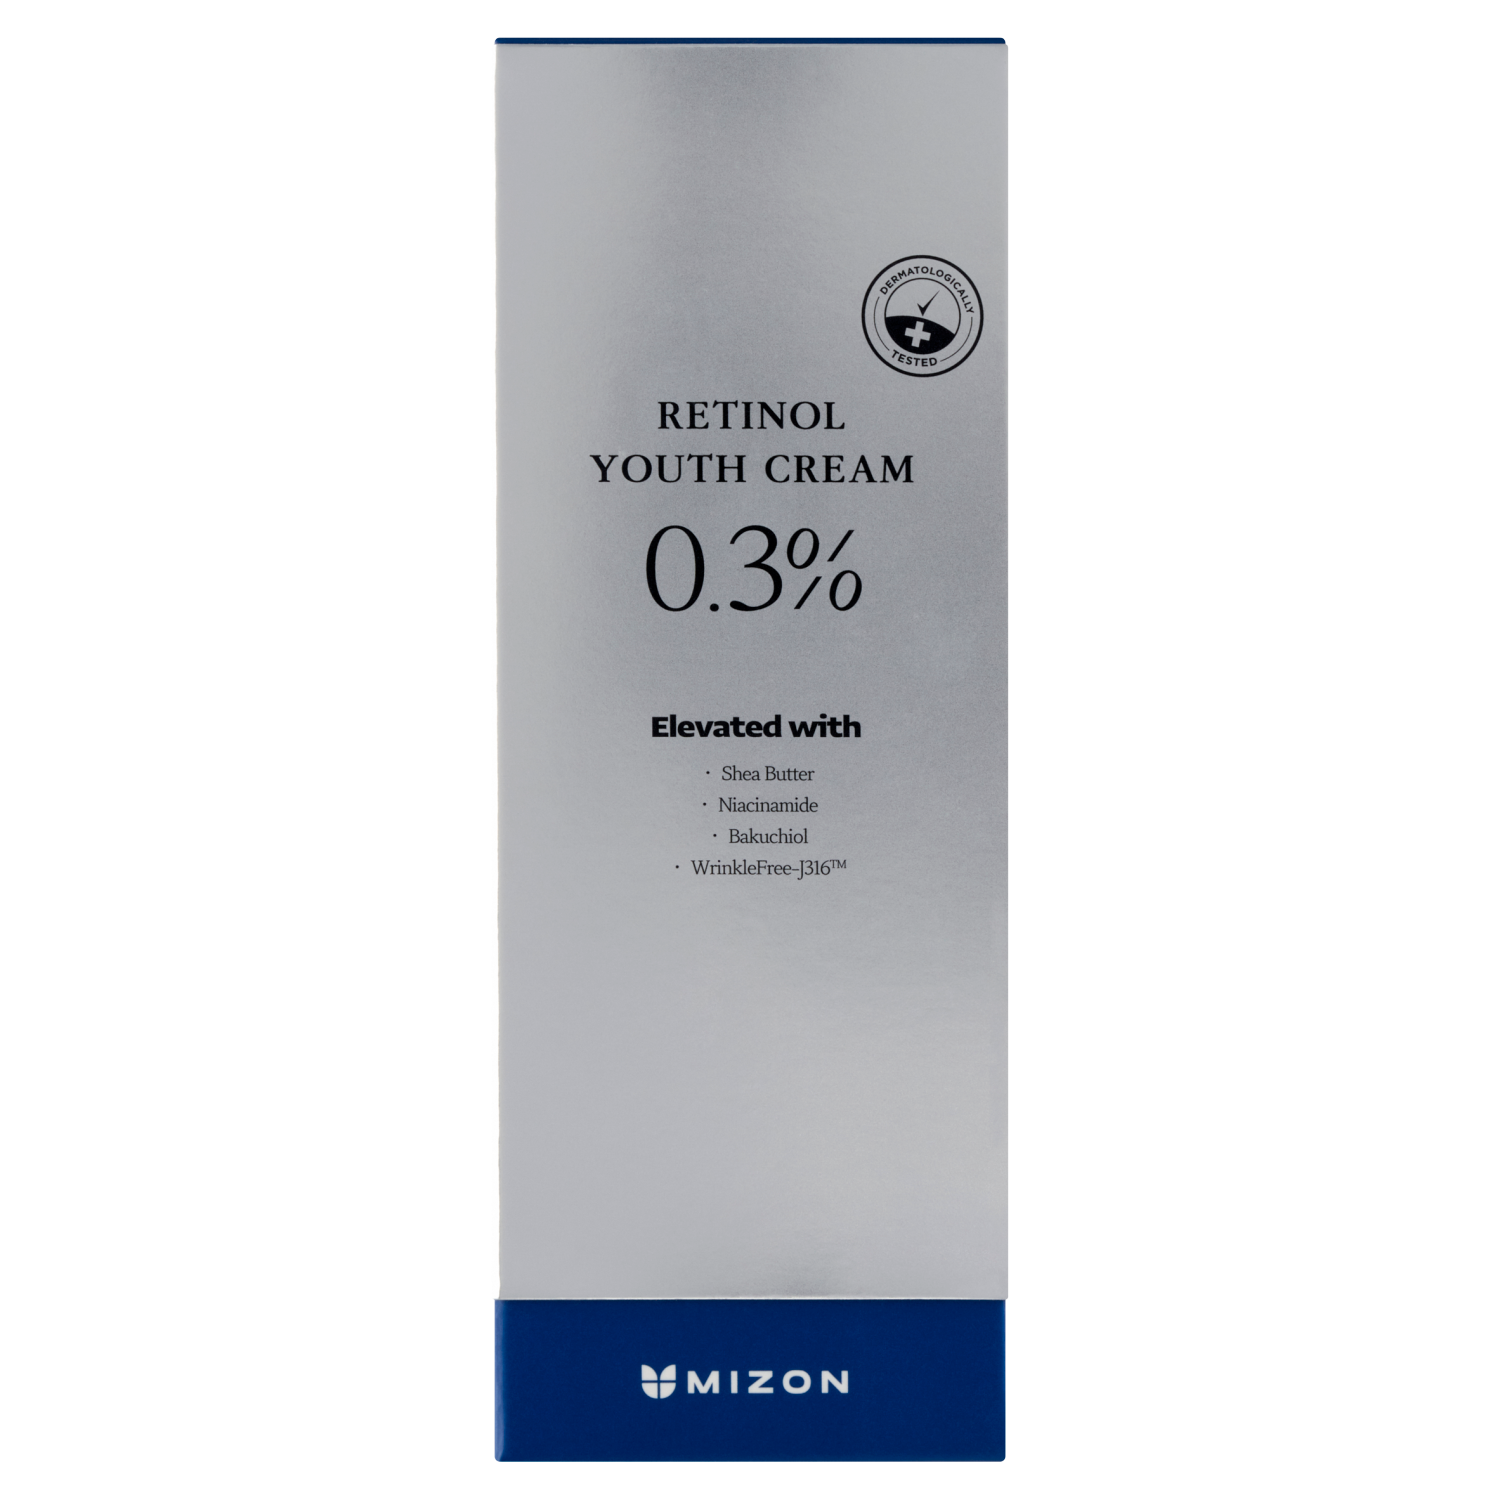 Омолаживающий крем для лица с Mizon, 26 гр mizon крем для молодости с ретинолом 0 3% 26 г 0 92 унции